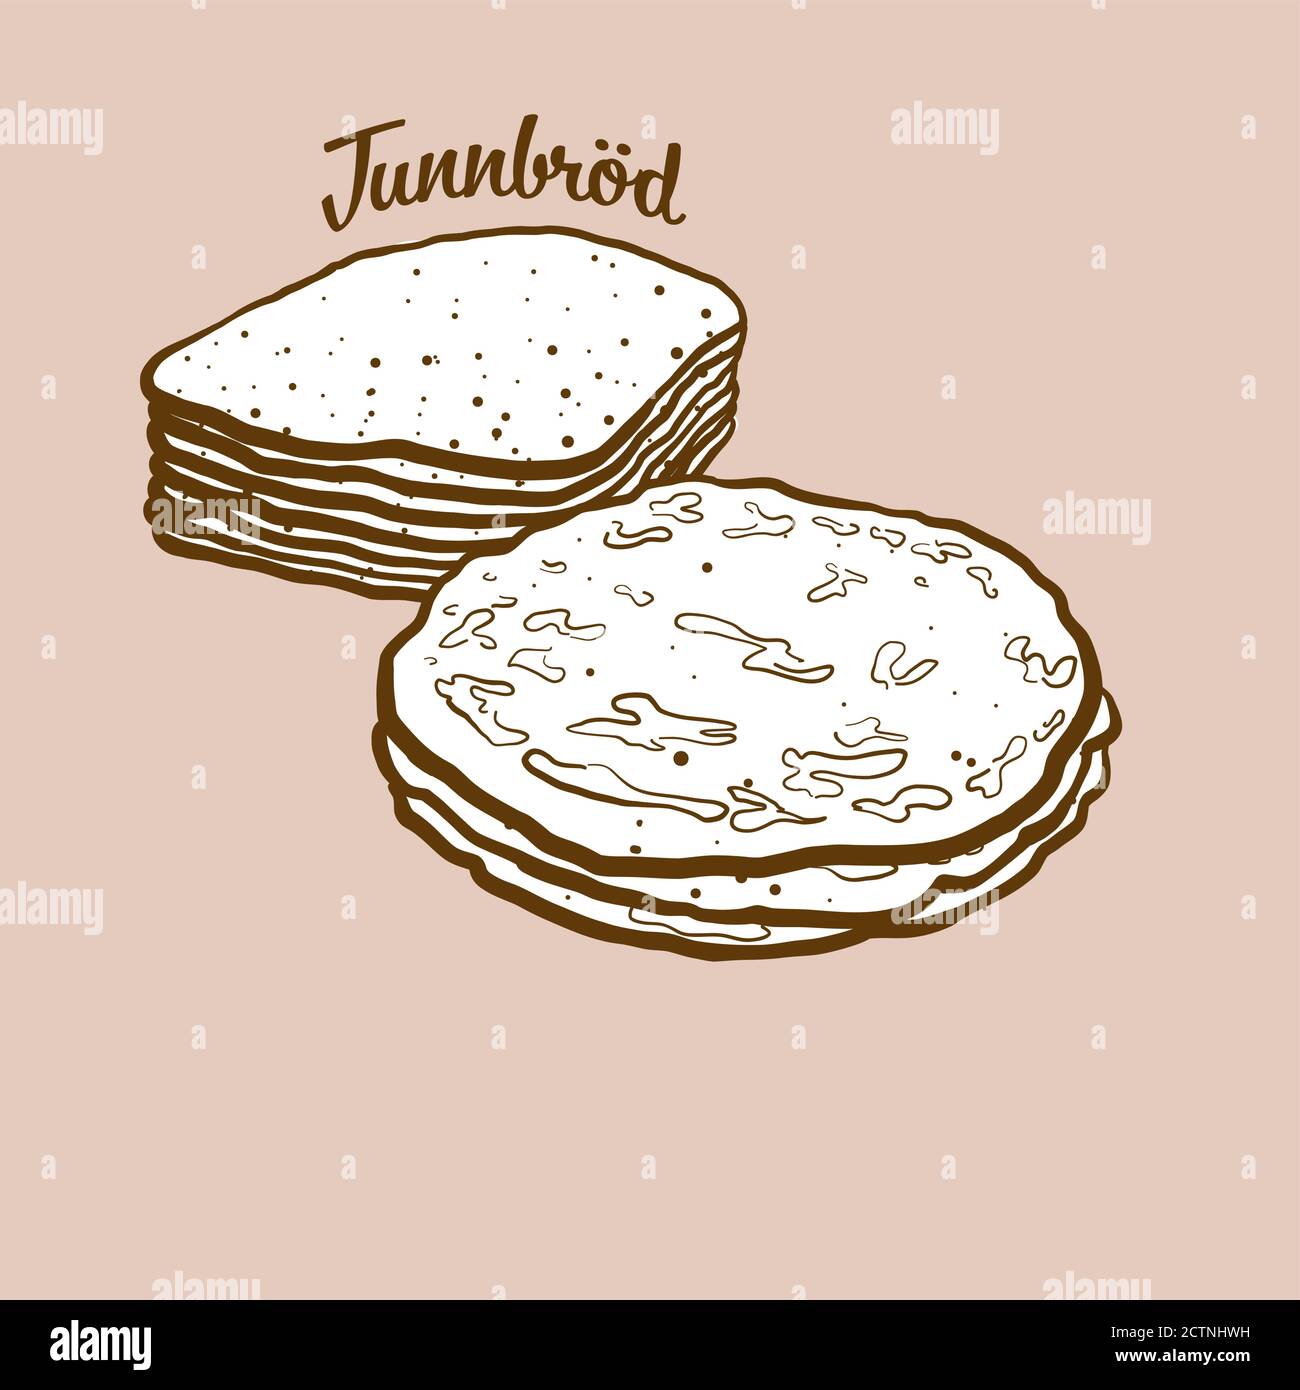 Ilustración de pan de tunnbröd dibujado a mano. Pan plano, generalmente conocido en Suecia. Serie de dibujo vectorial. Ilustración del Vector